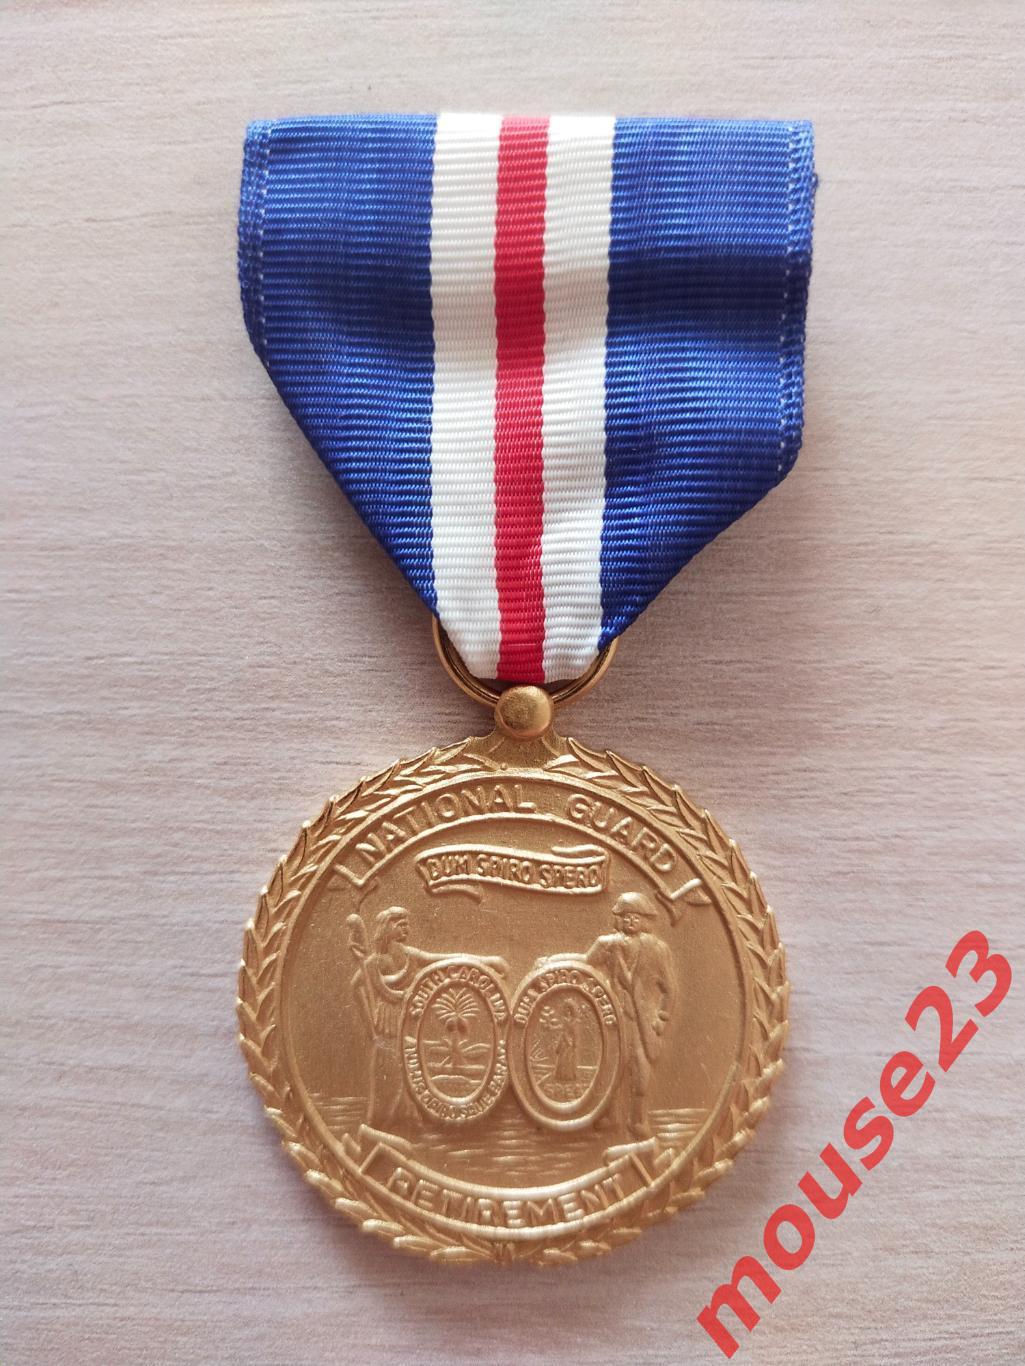 Пенсионная медаль Южной Каролины национальной гвардии. США